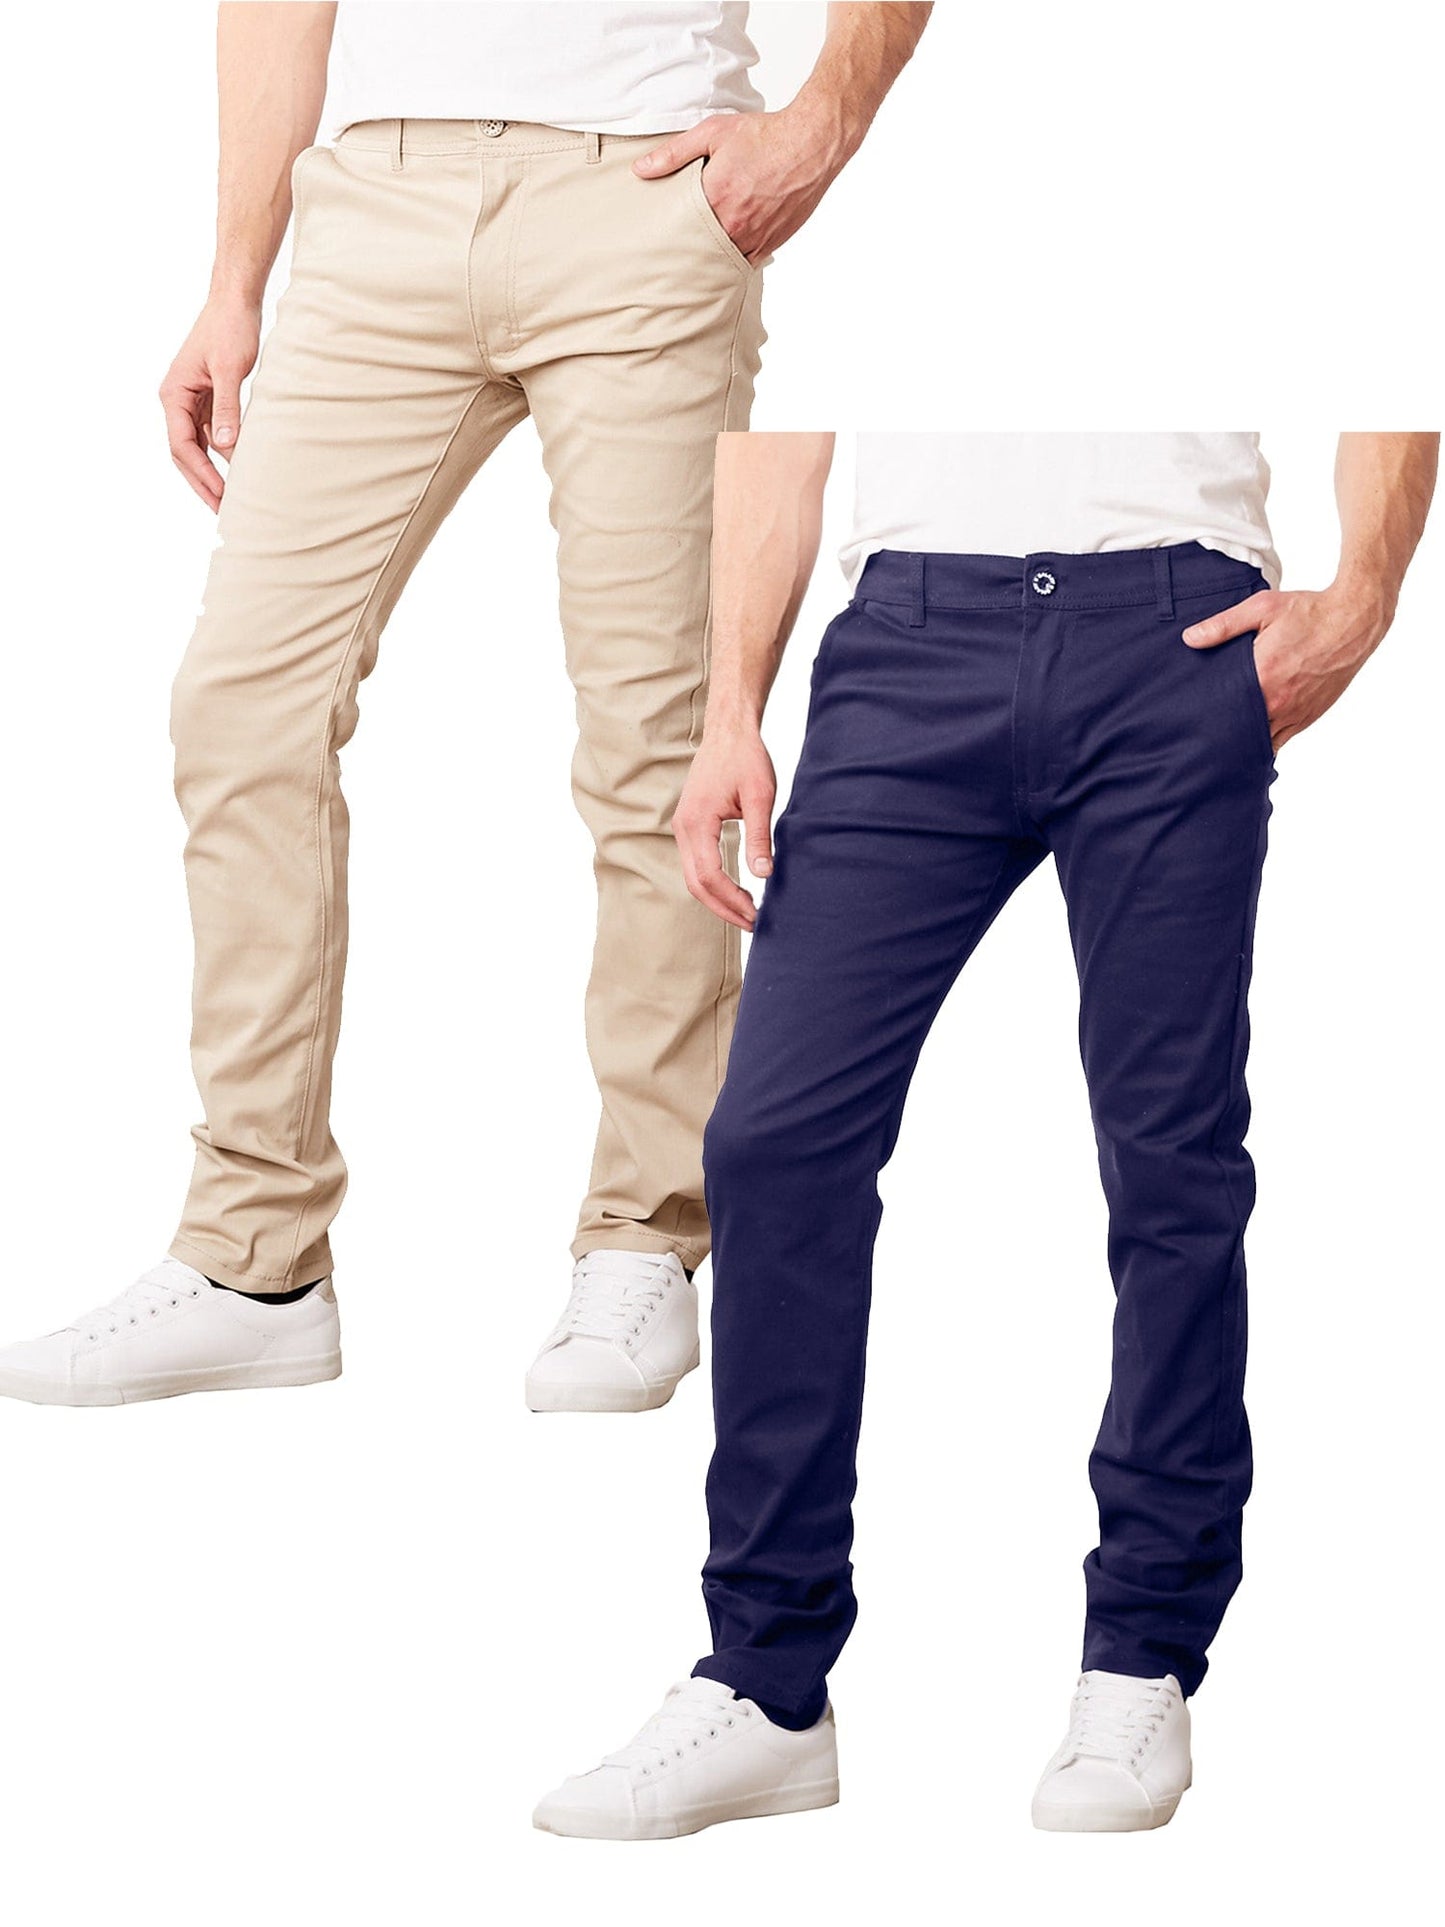 Paquete de 2 pantalones chinos de algodón elásticos y ajustados para uso diario para hombre (entrepierna de 31") 